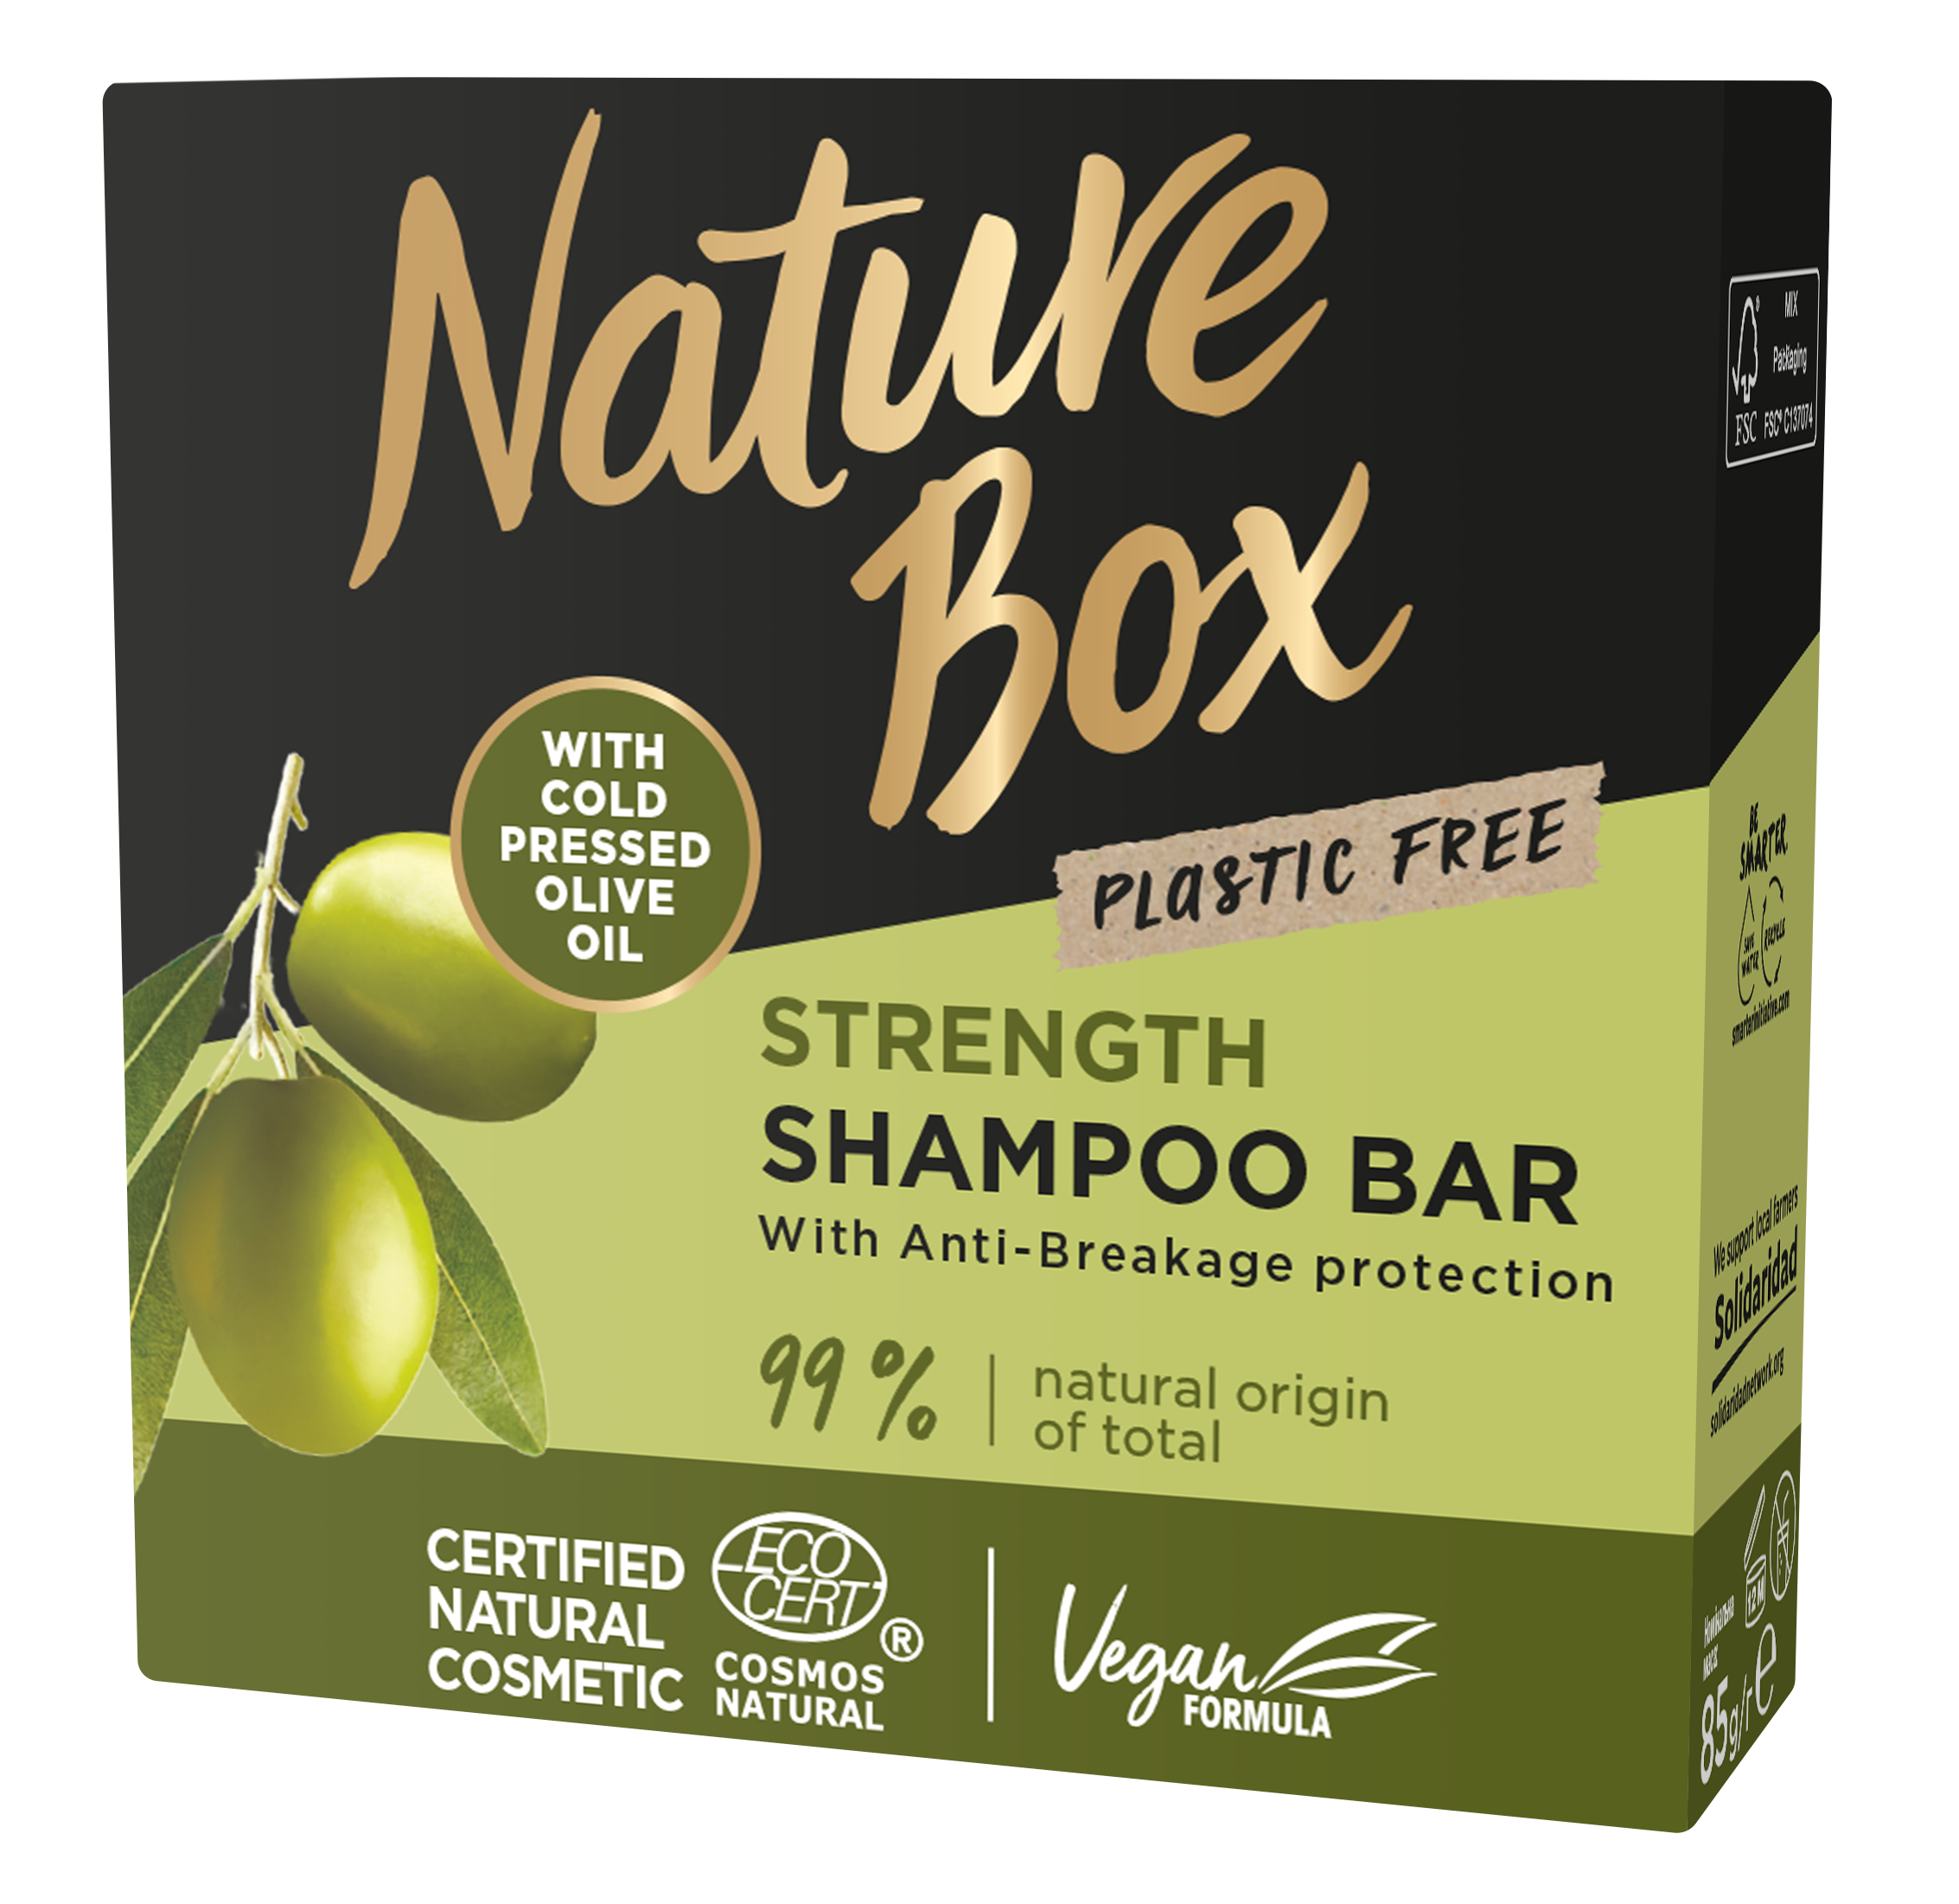 Твердый шампунь Nature Box Olive Oil, для укрепления длинных волос и противодействия ломкости, с оливковым маслом холодного отжима, 85 г - фото 1